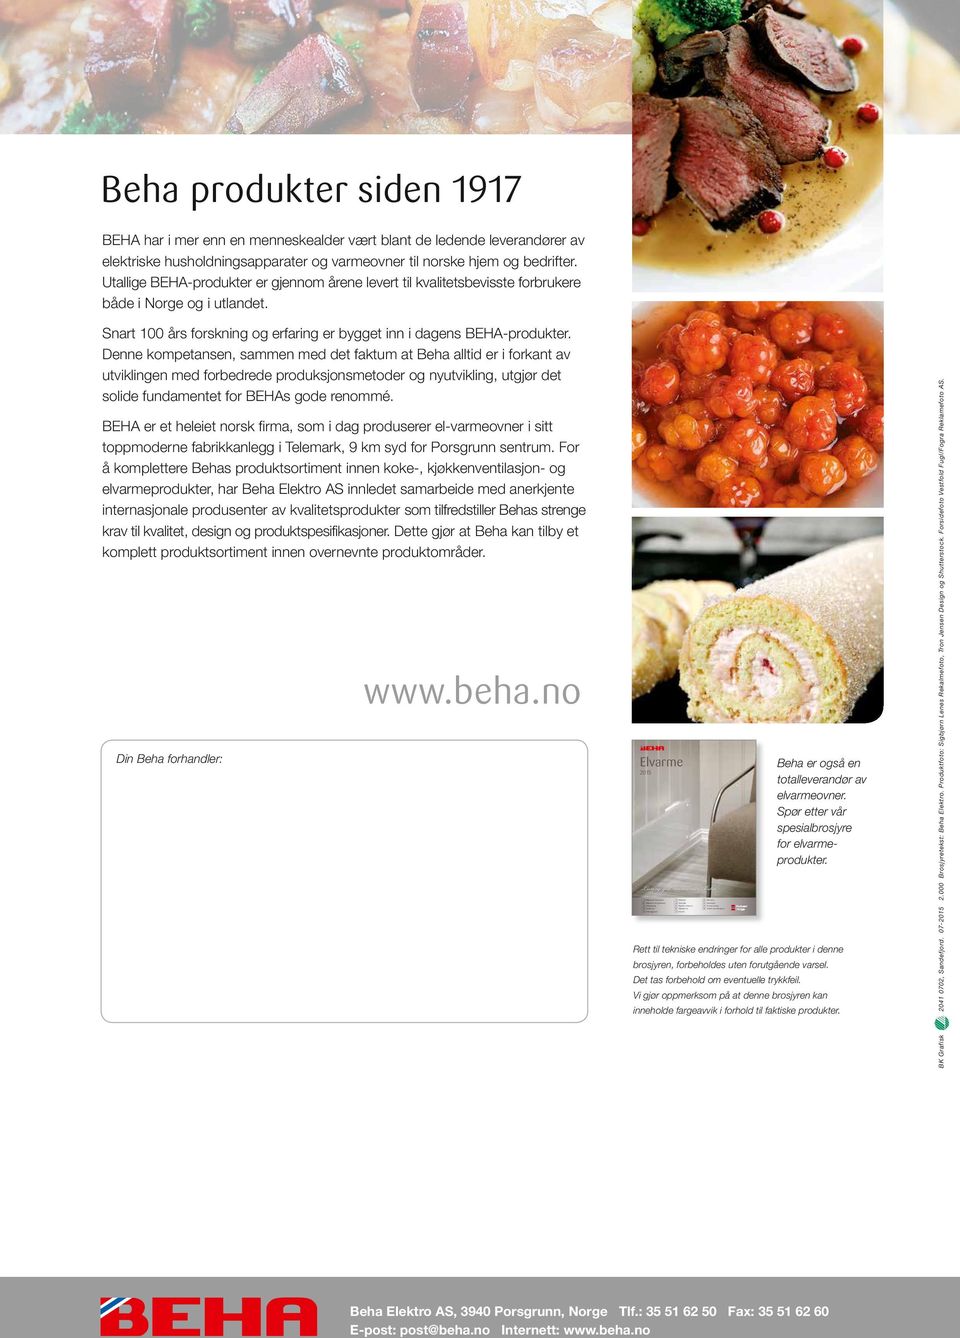 13 Beha produkter siden 1917 BEHA har i mer enn en menneskealder vært blant de ledende leverandører av elektriske husholdningsapparater og varmeovner til norske hjem og bedrifter.